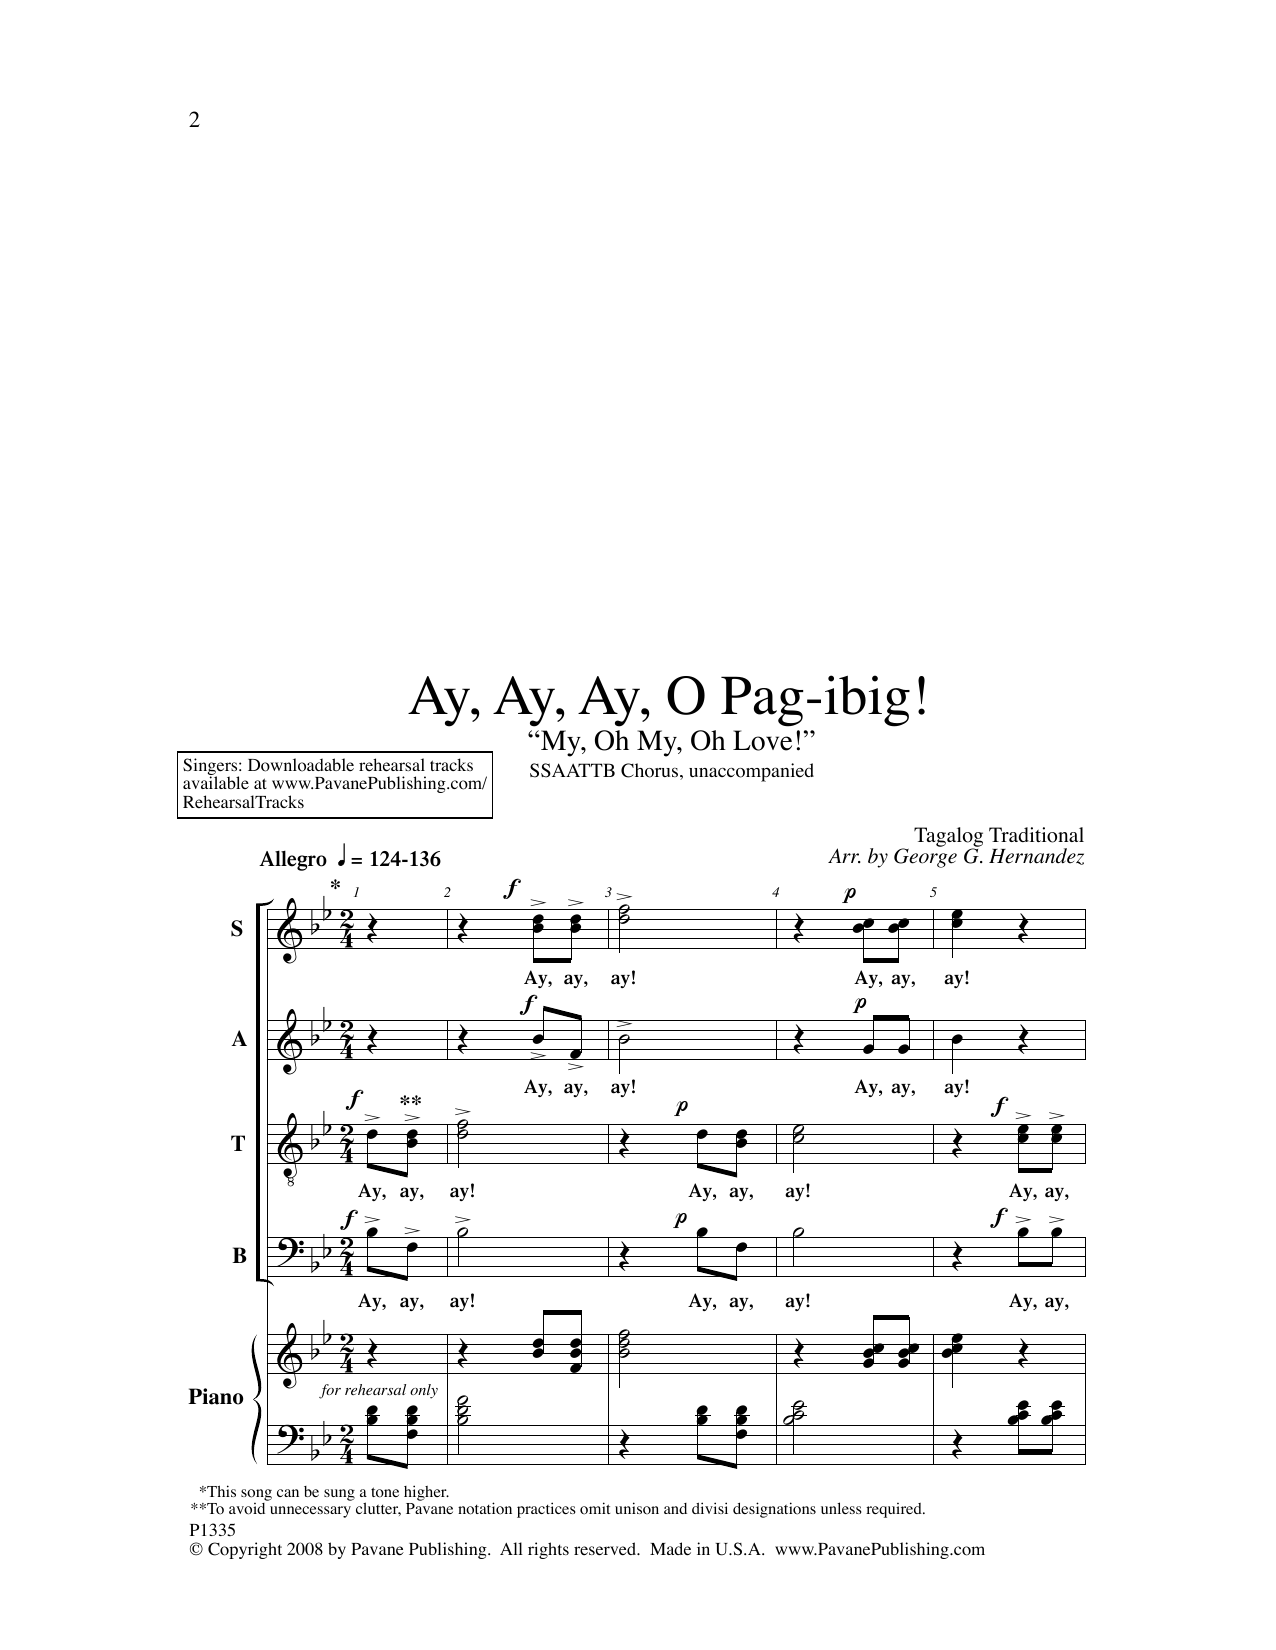 George Hernandez Ay, Ay, Ay, O Pag-ibig! Sheet Music Notes & Chords for SATB Choir - Download or Print PDF